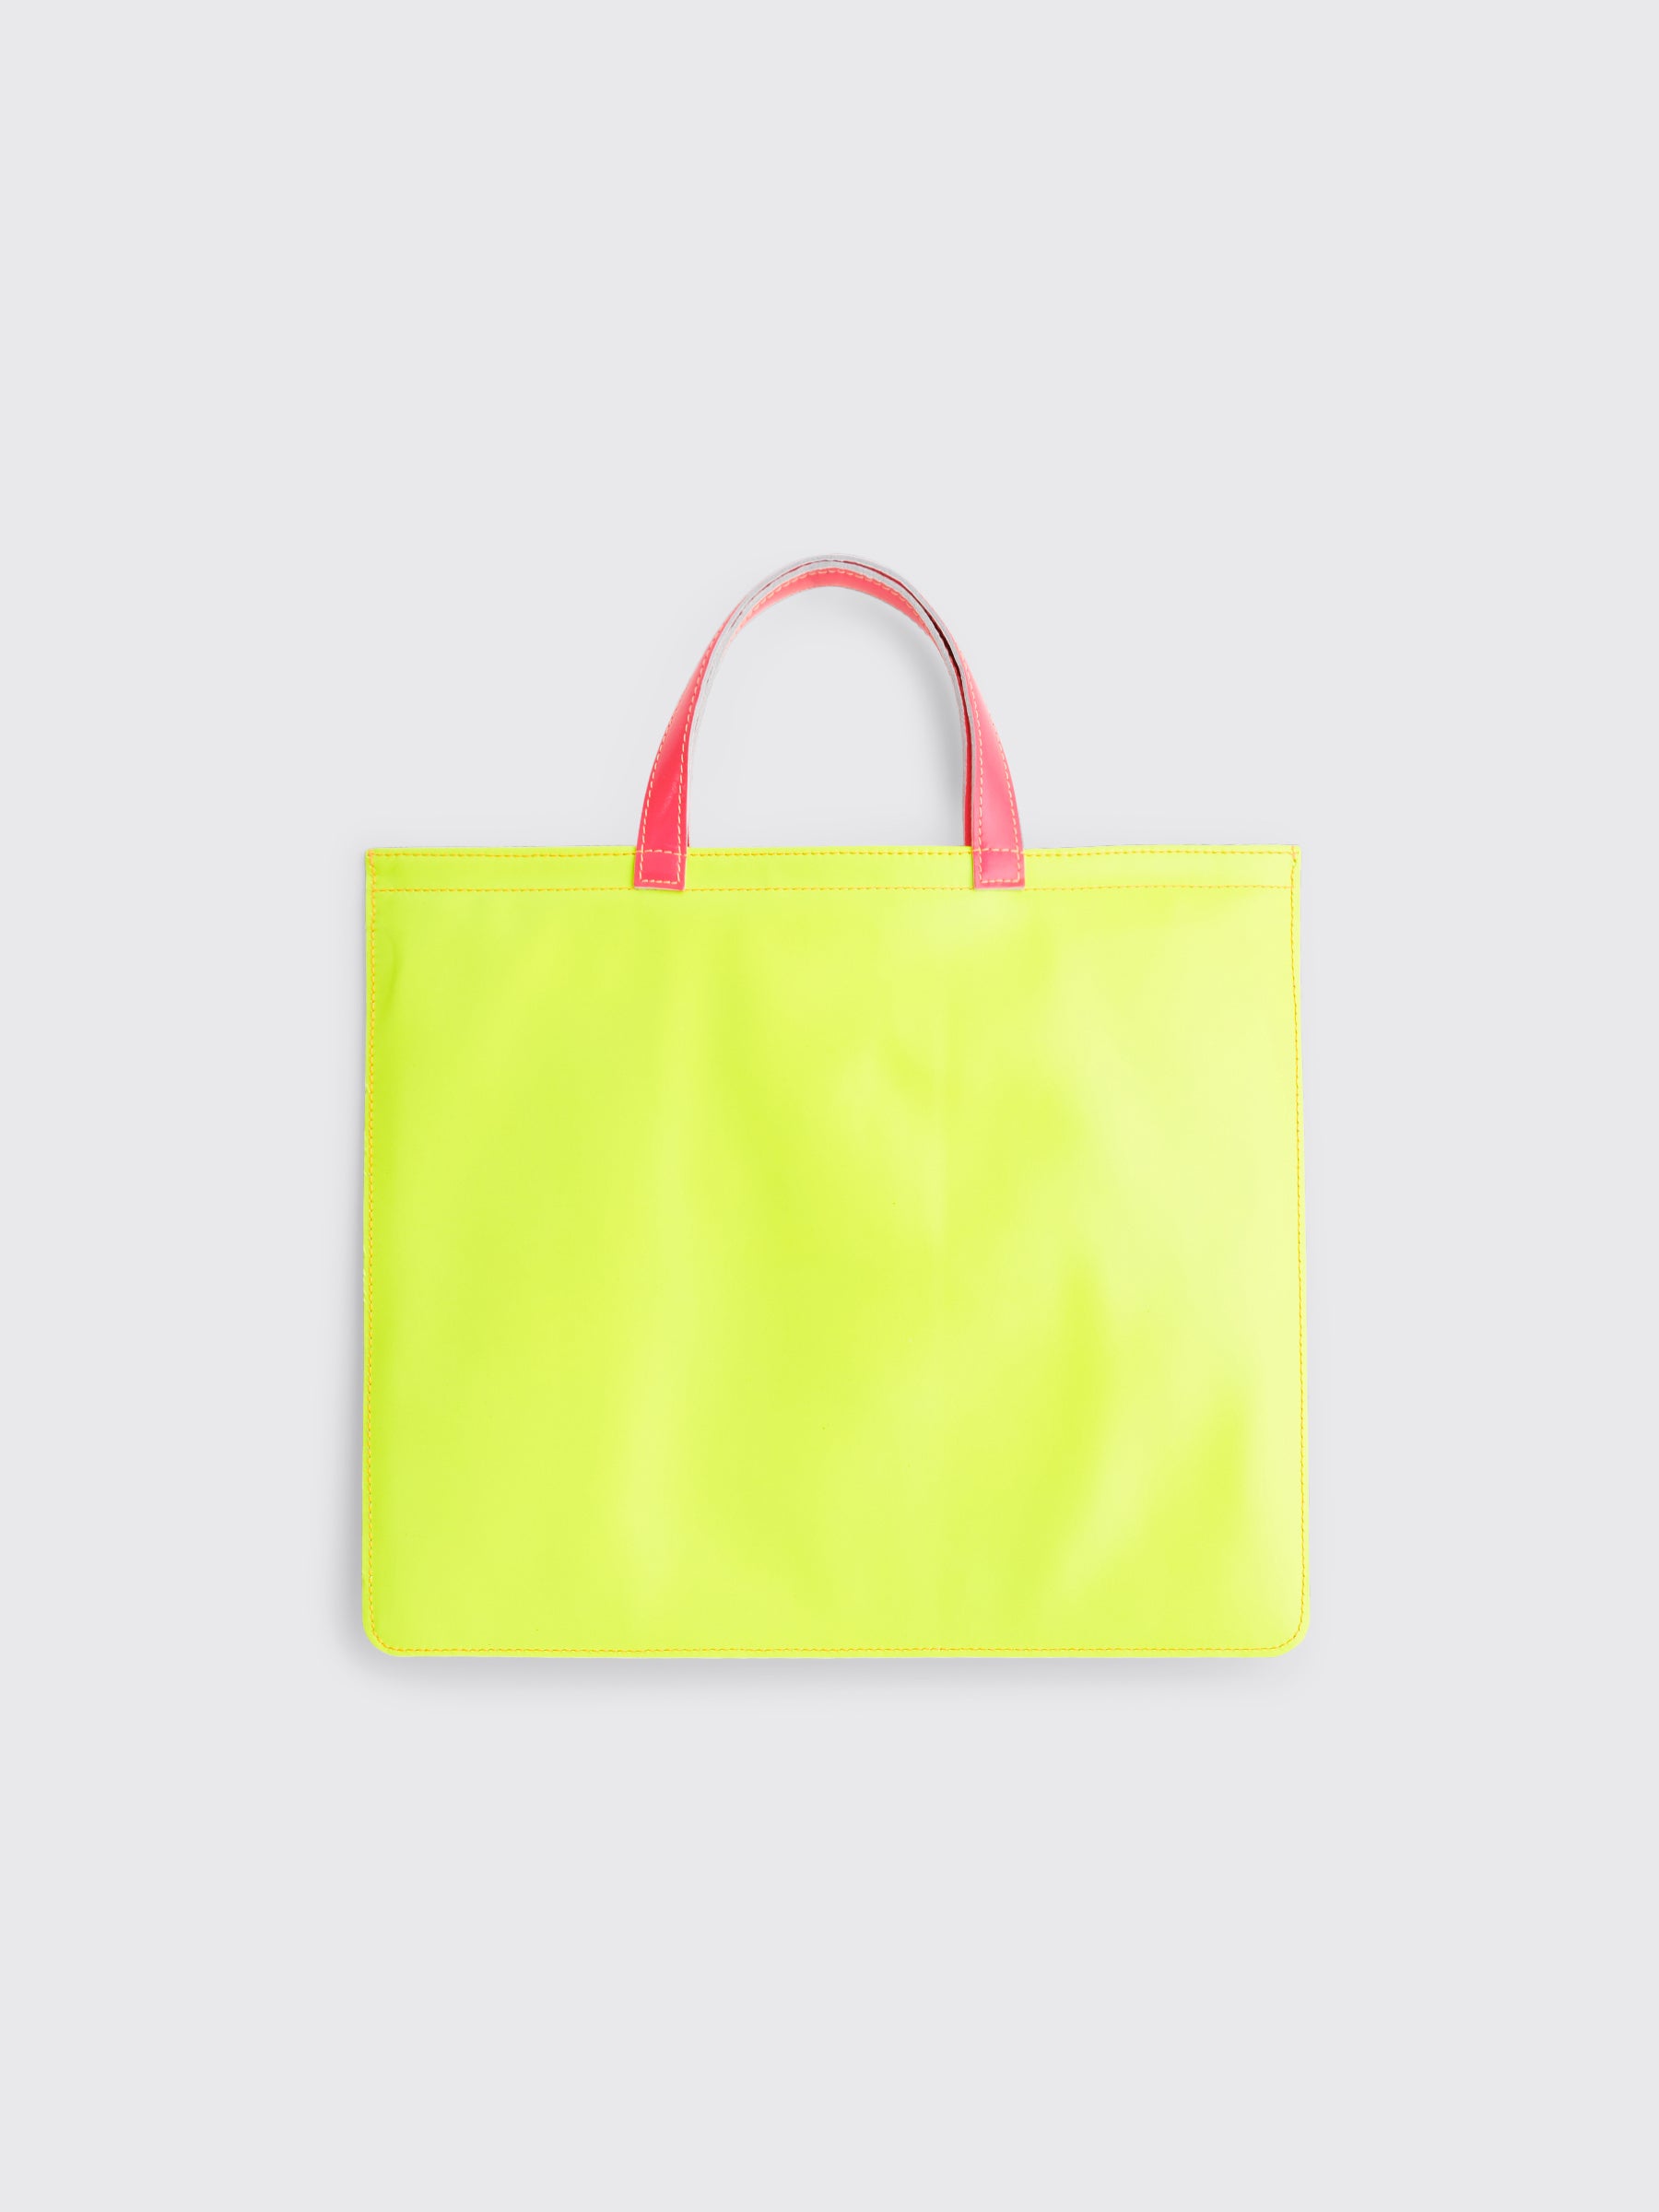 Comme des Garçons Wallet Super Fluo Leather Bag Yellow / Orange